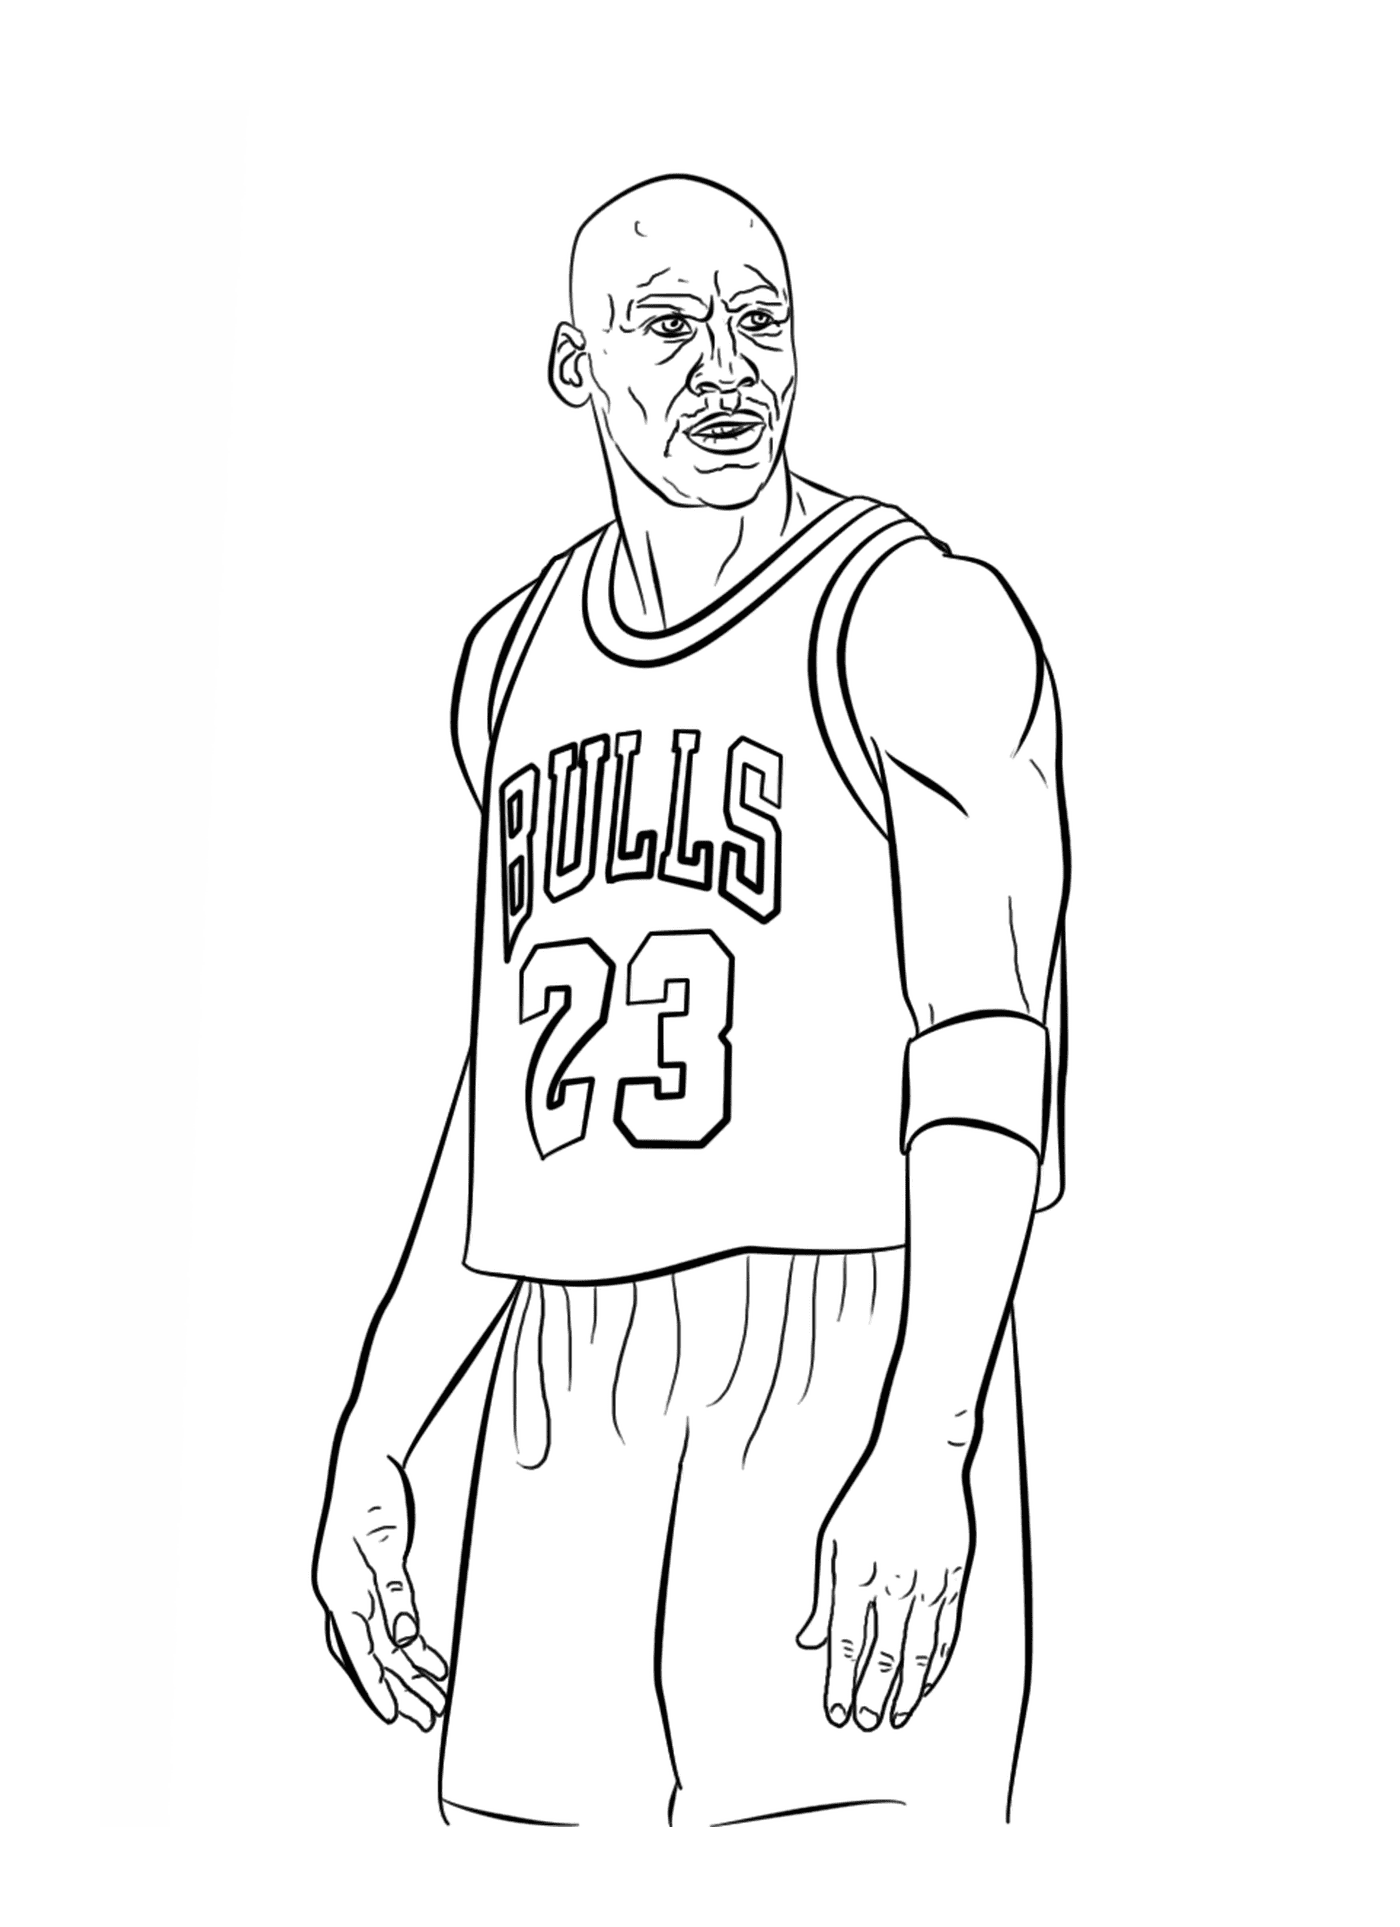  Michael Jordan, NBA篮球运动员 